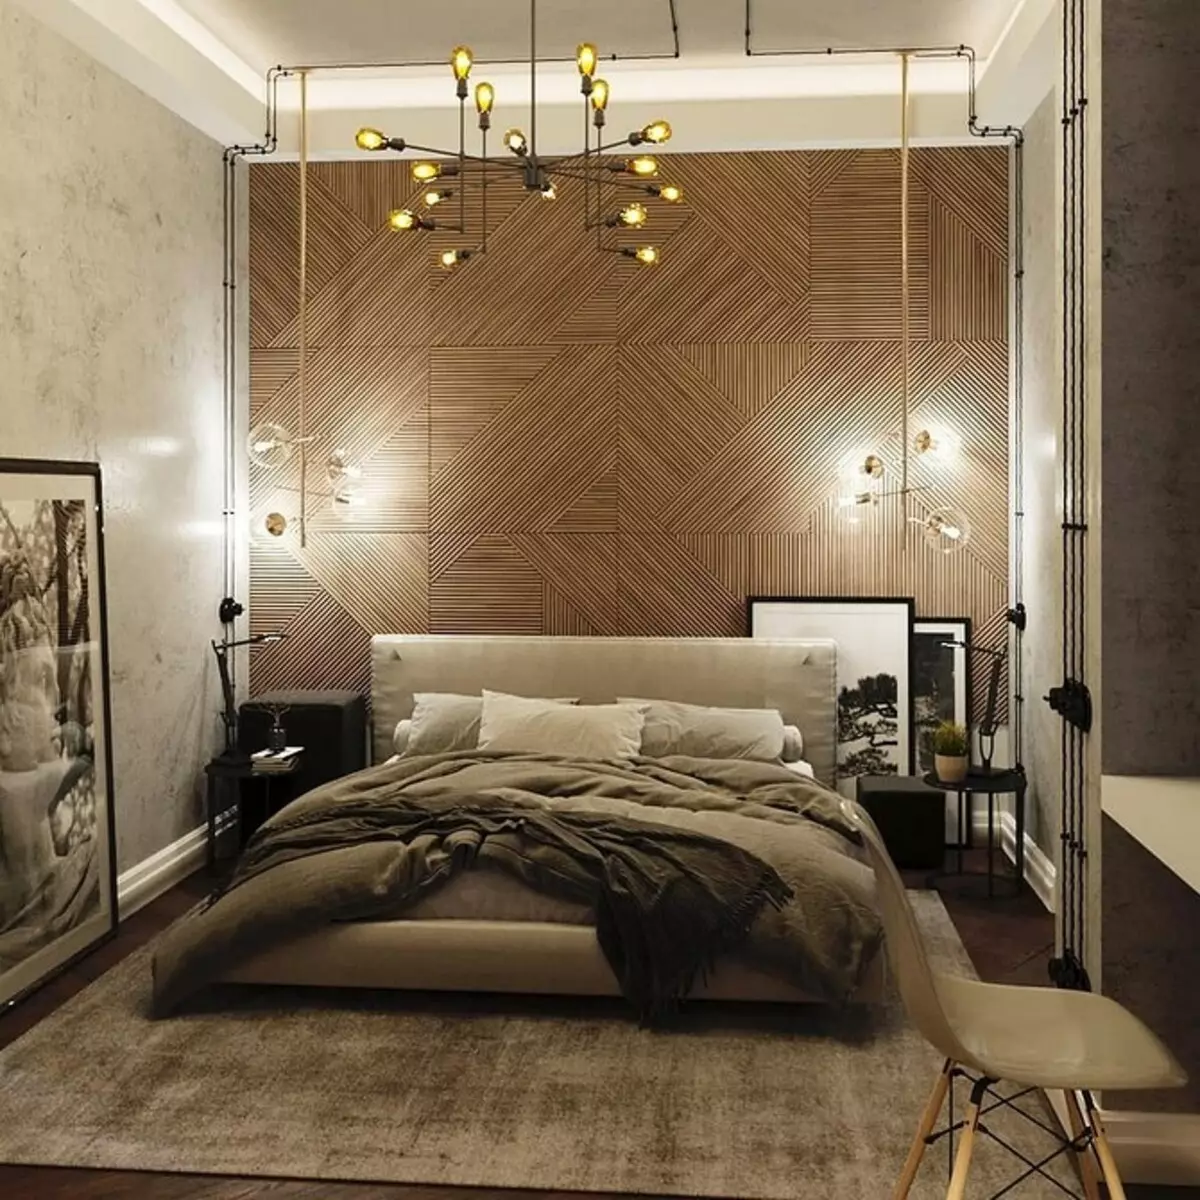 Come scegliere un lampadario in camera da letto: 5 consigli per coloro che vogliono organizzare una stanza giusta 9638_29